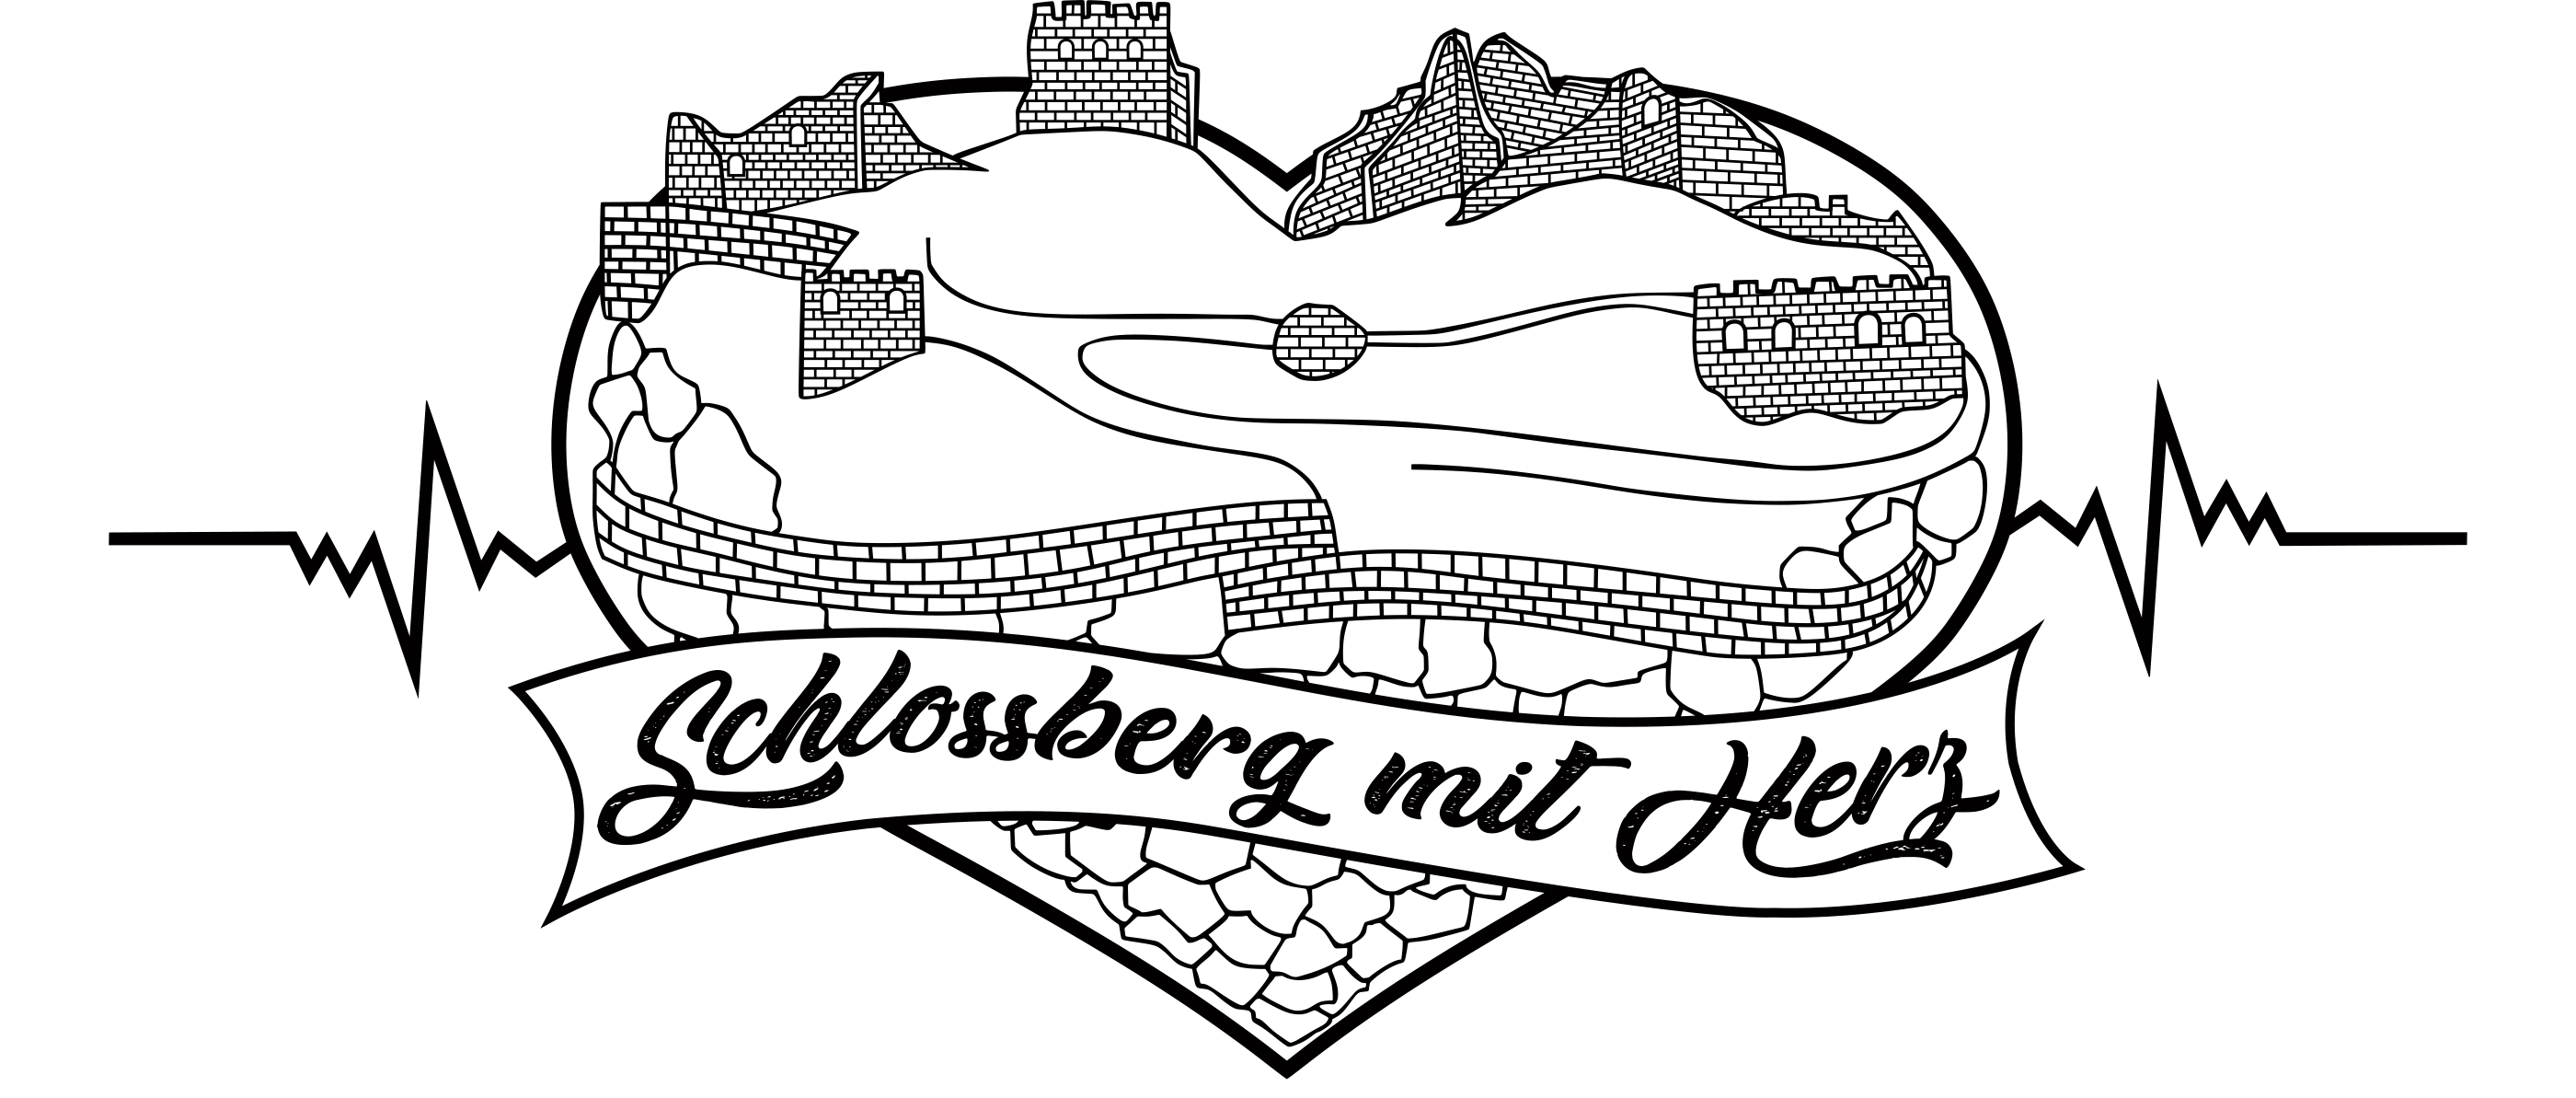 Schlossberg mit Herz